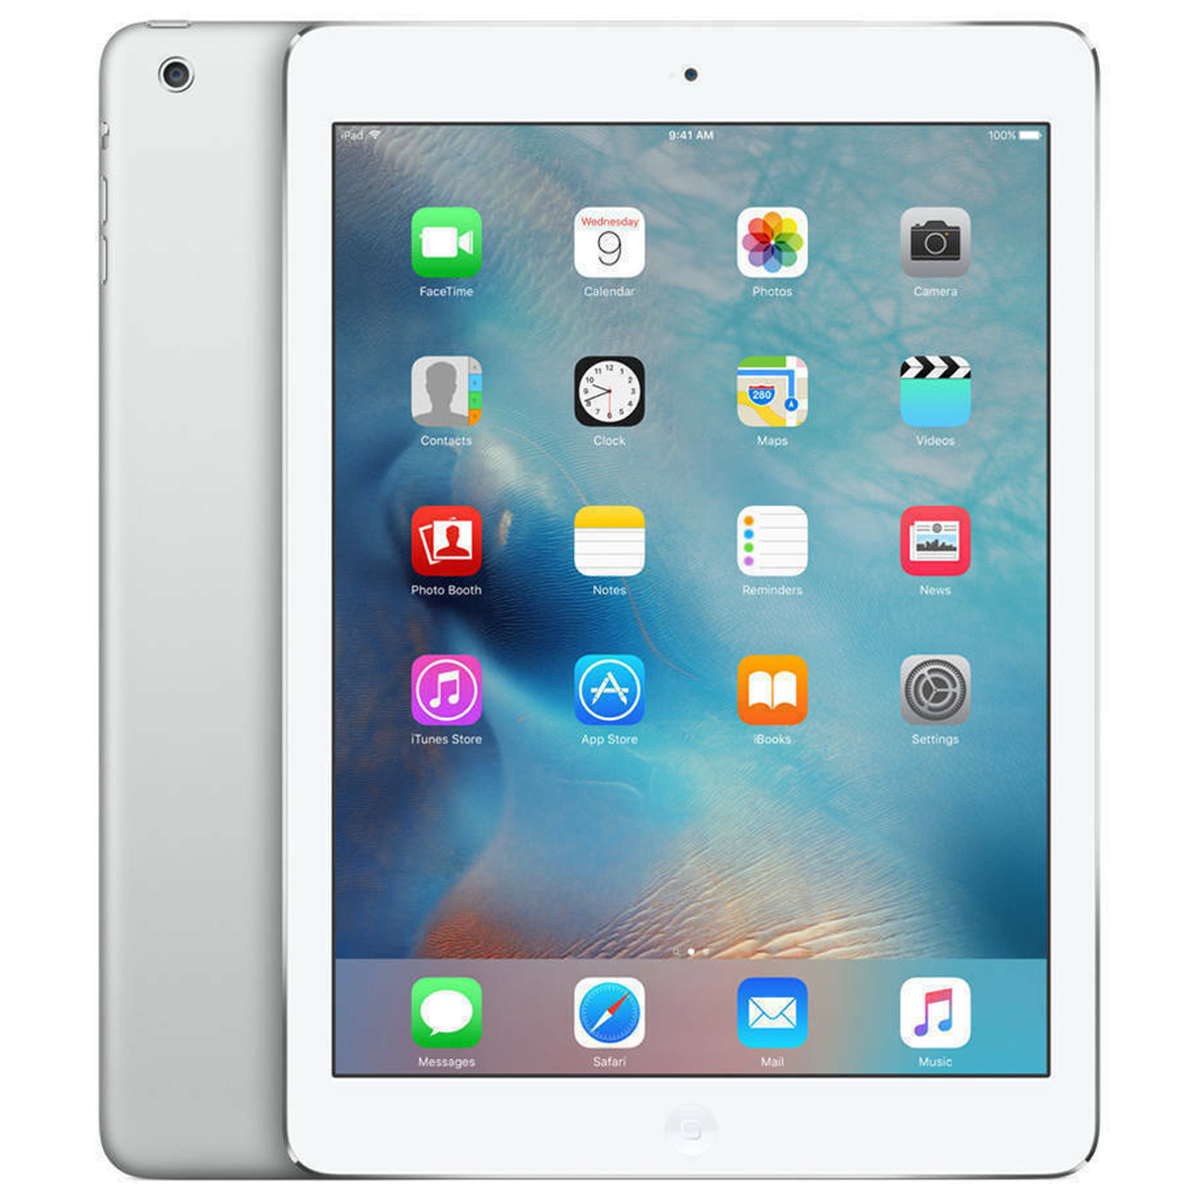 mini　iPad　Silver　32GB,　White　Restored　7.9　(MD532LL/A)　Apple　Wi-Fi,　(Refurbished)